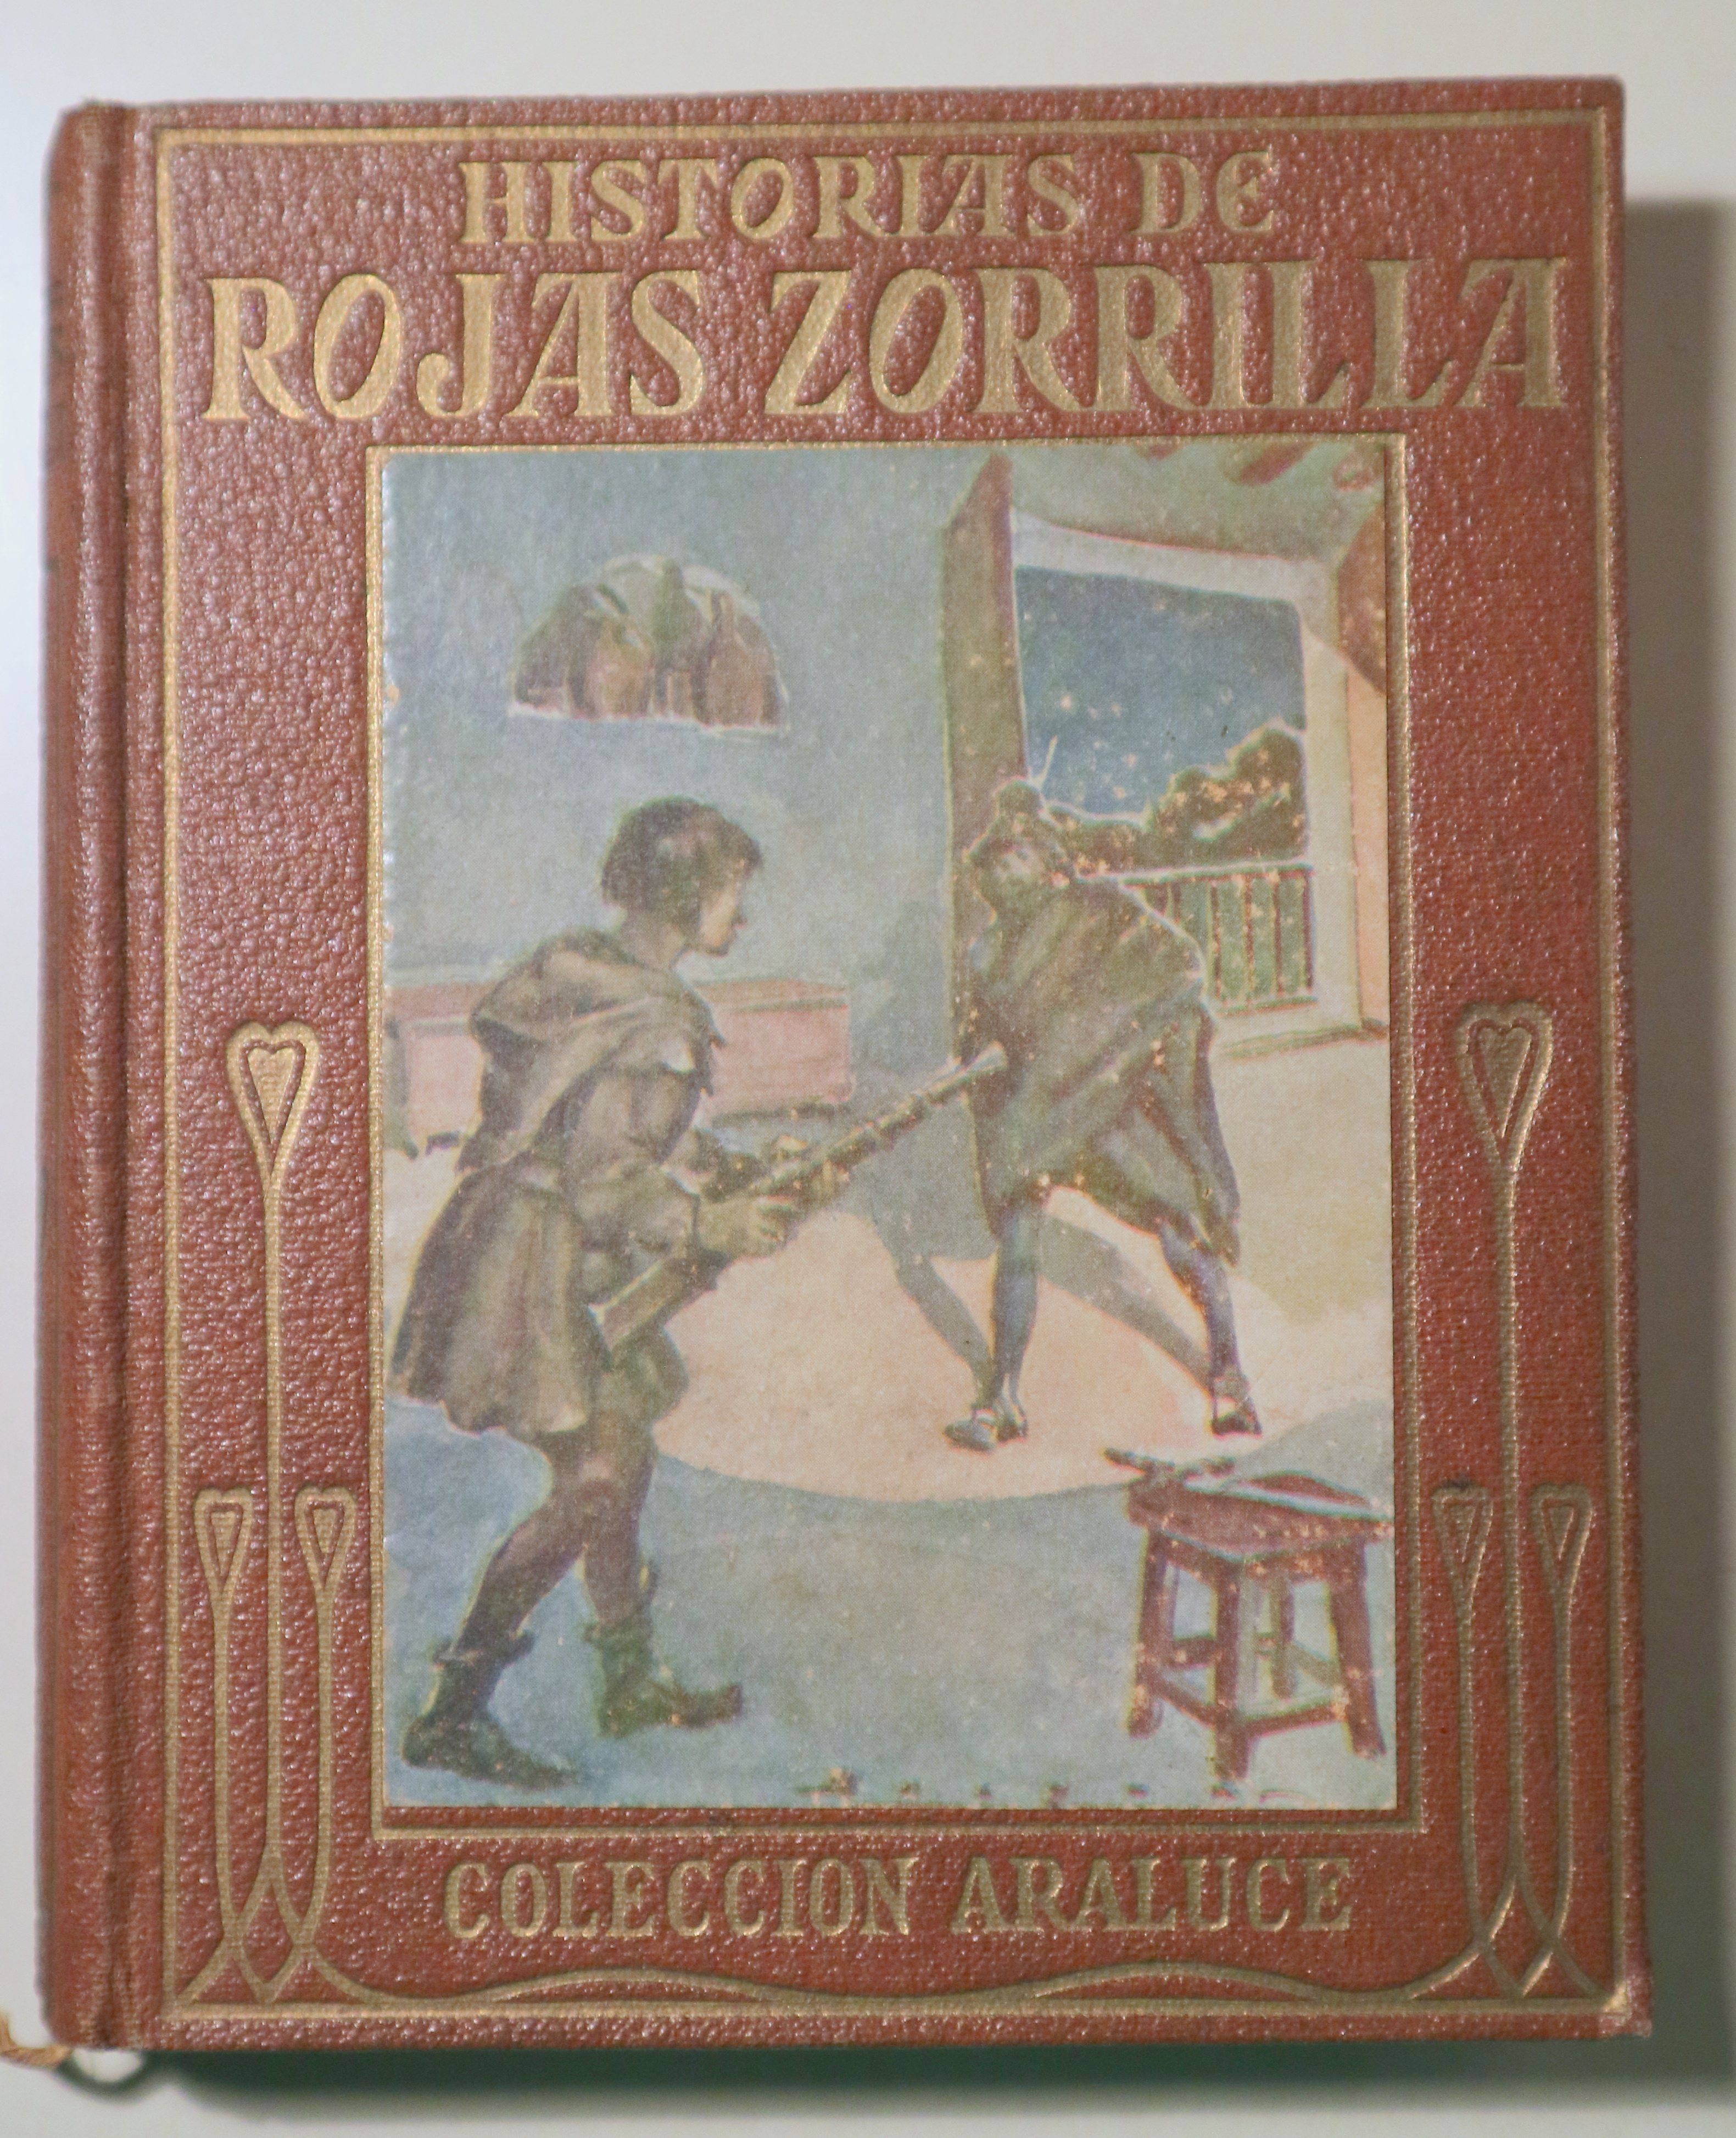 HISTORIAS DE ROJAS ZORRILLA - Barcelona s/f - Ilustrado - 1ª edición